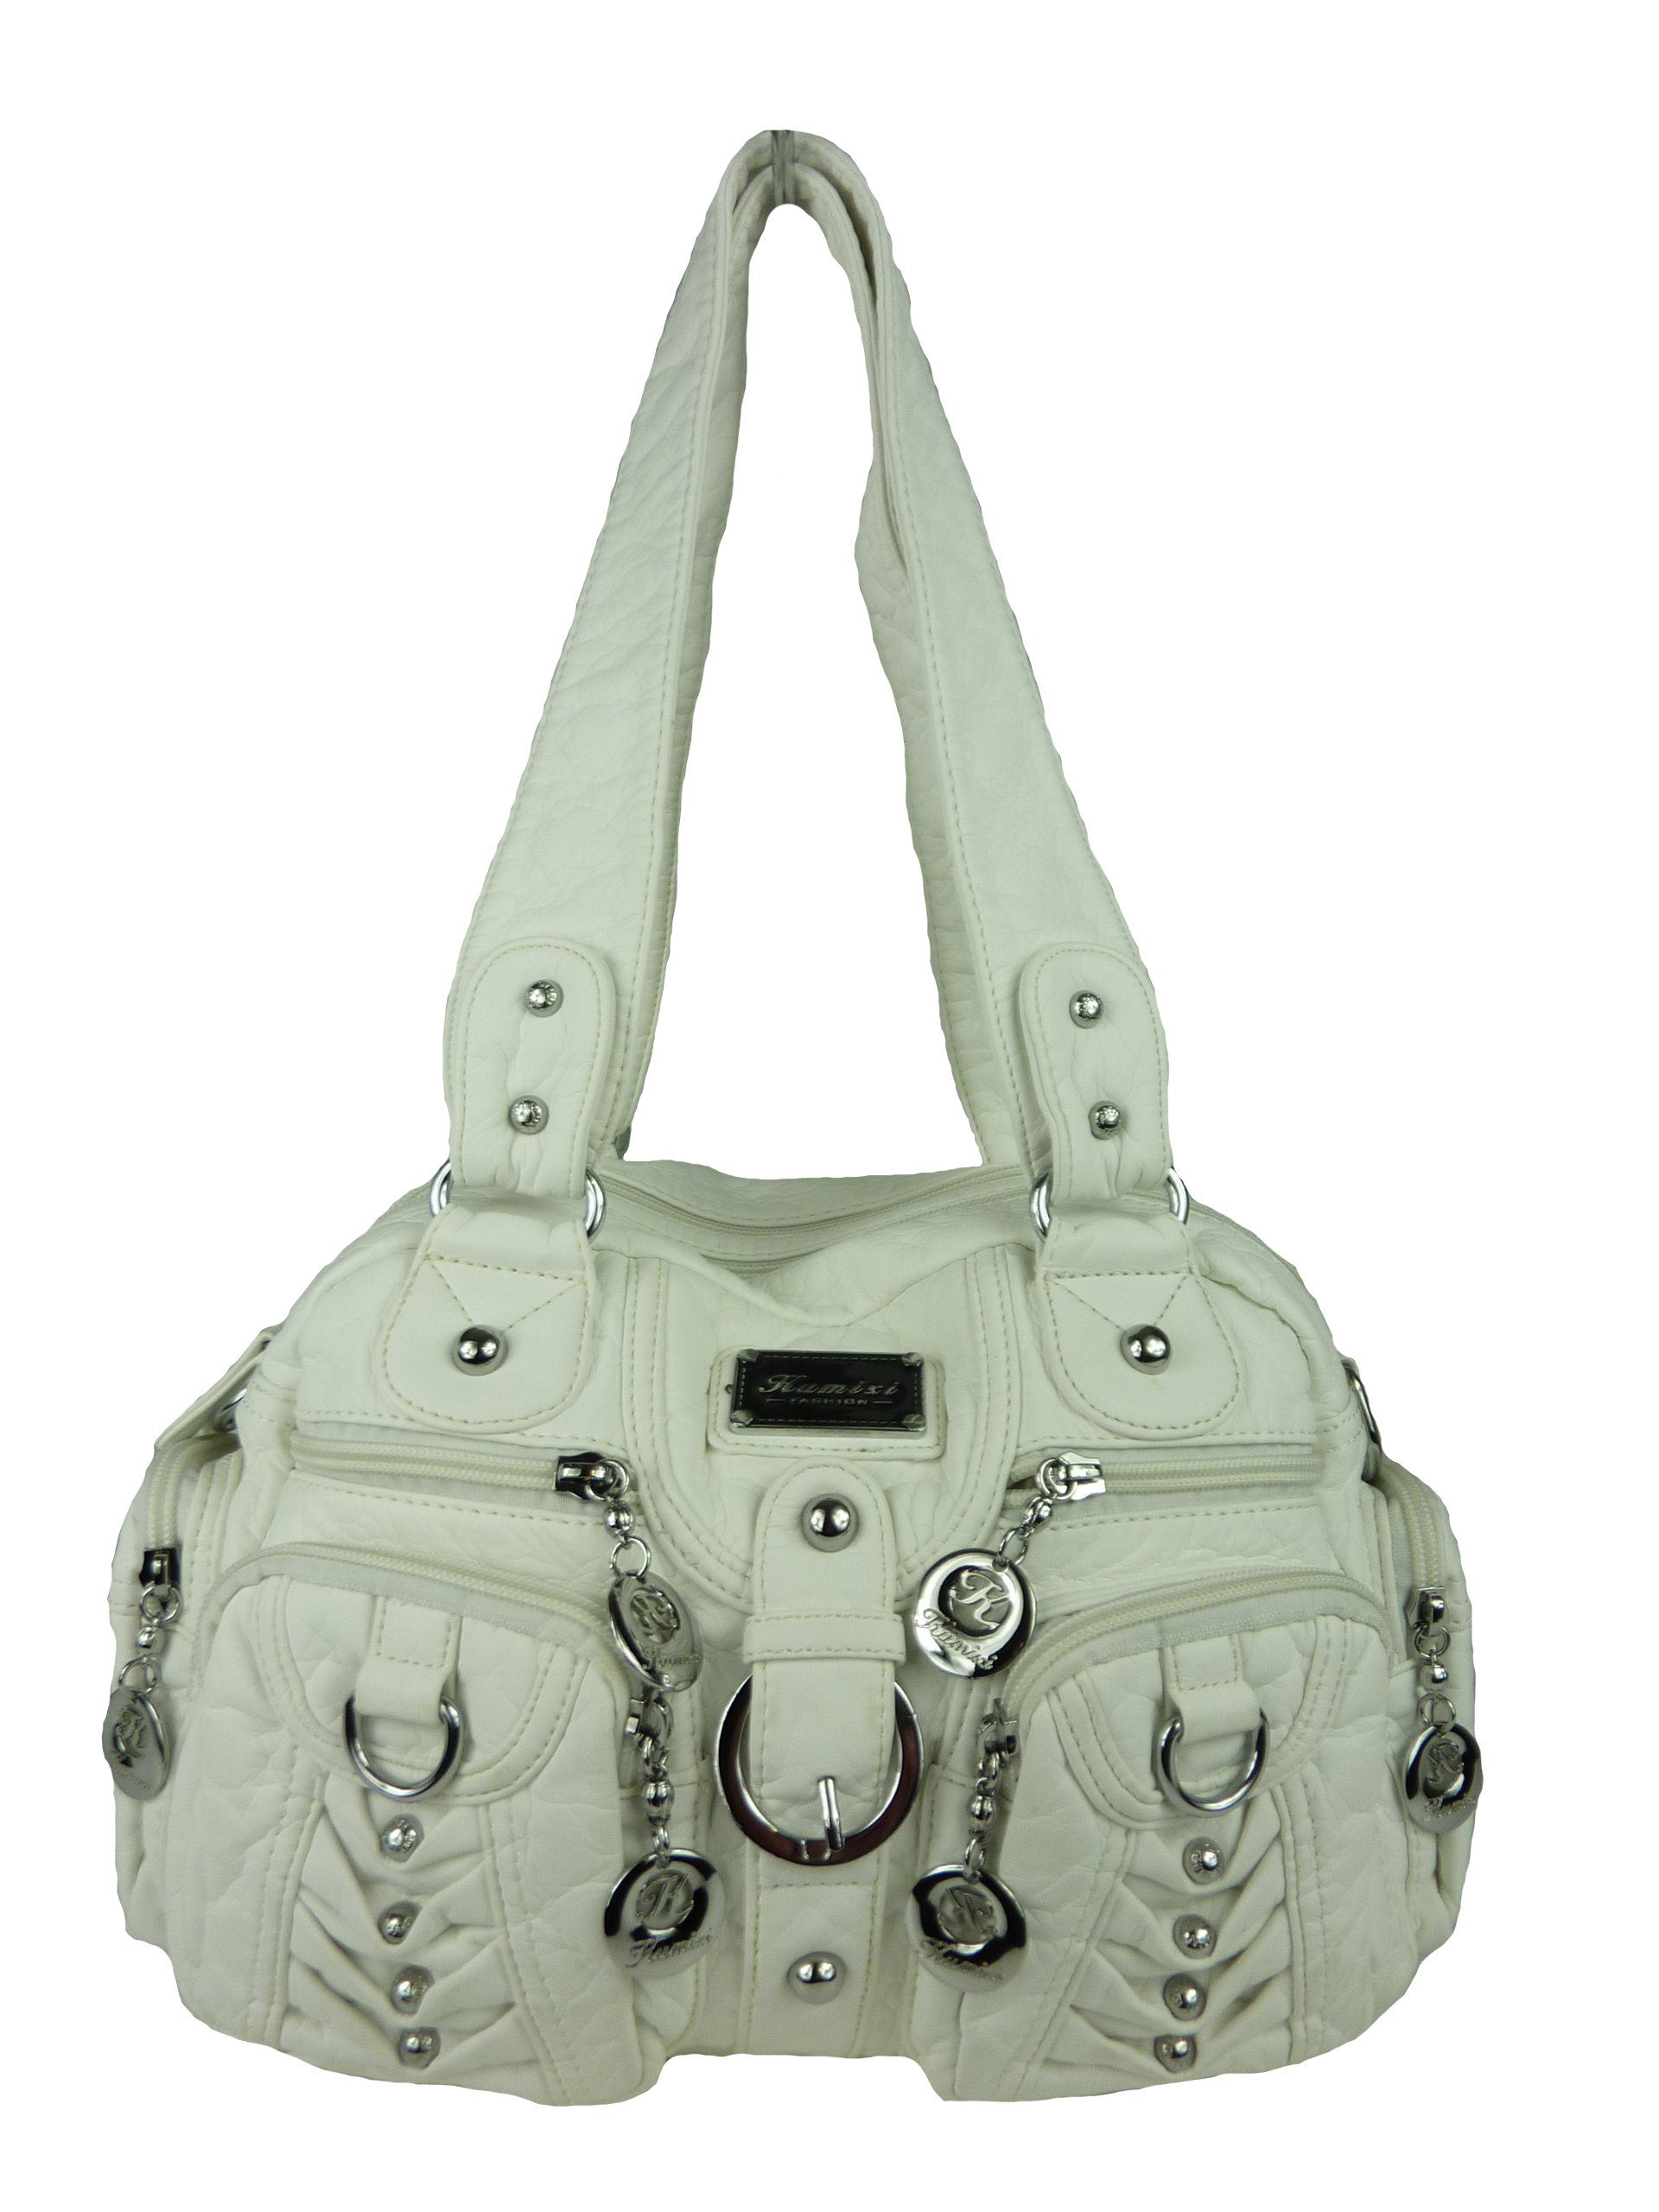 Nieten verstellbarer Handtasche Taschen4life (Schultertasche) weiß klassische viele Fächer, Schultertasche AKW22032, mit Damen abnehmbarer Schulterriemen